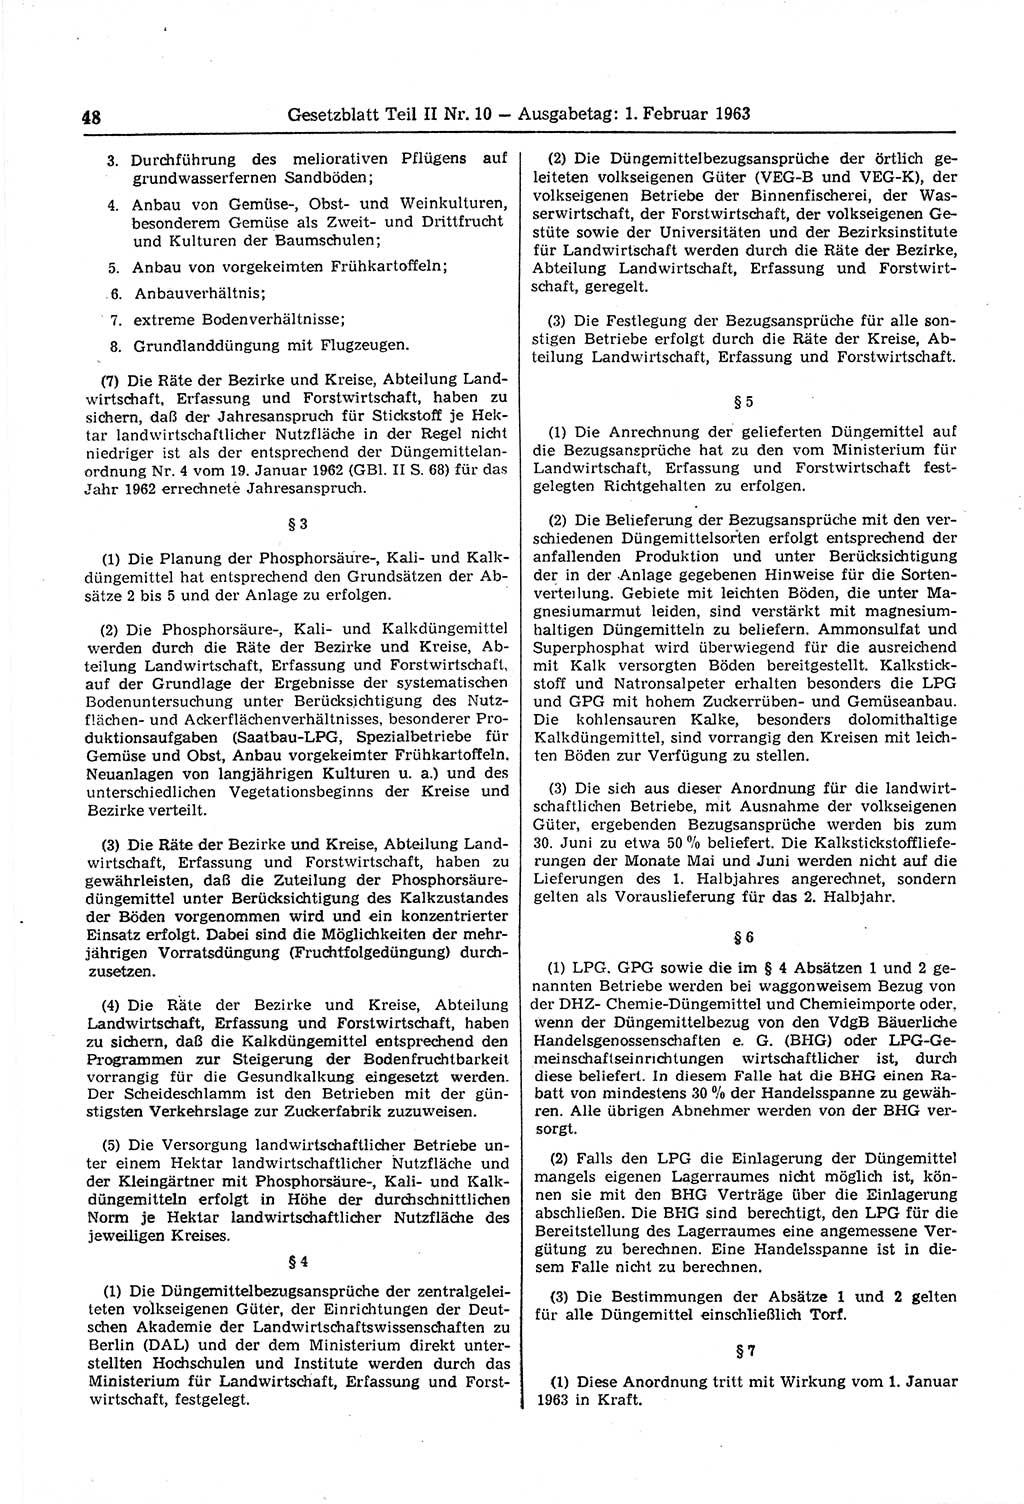 Gesetzblatt (GBl.) der Deutschen Demokratischen Republik (DDR) Teil ⅠⅠ 1963, Seite 48 (GBl. DDR ⅠⅠ 1963, S. 48)